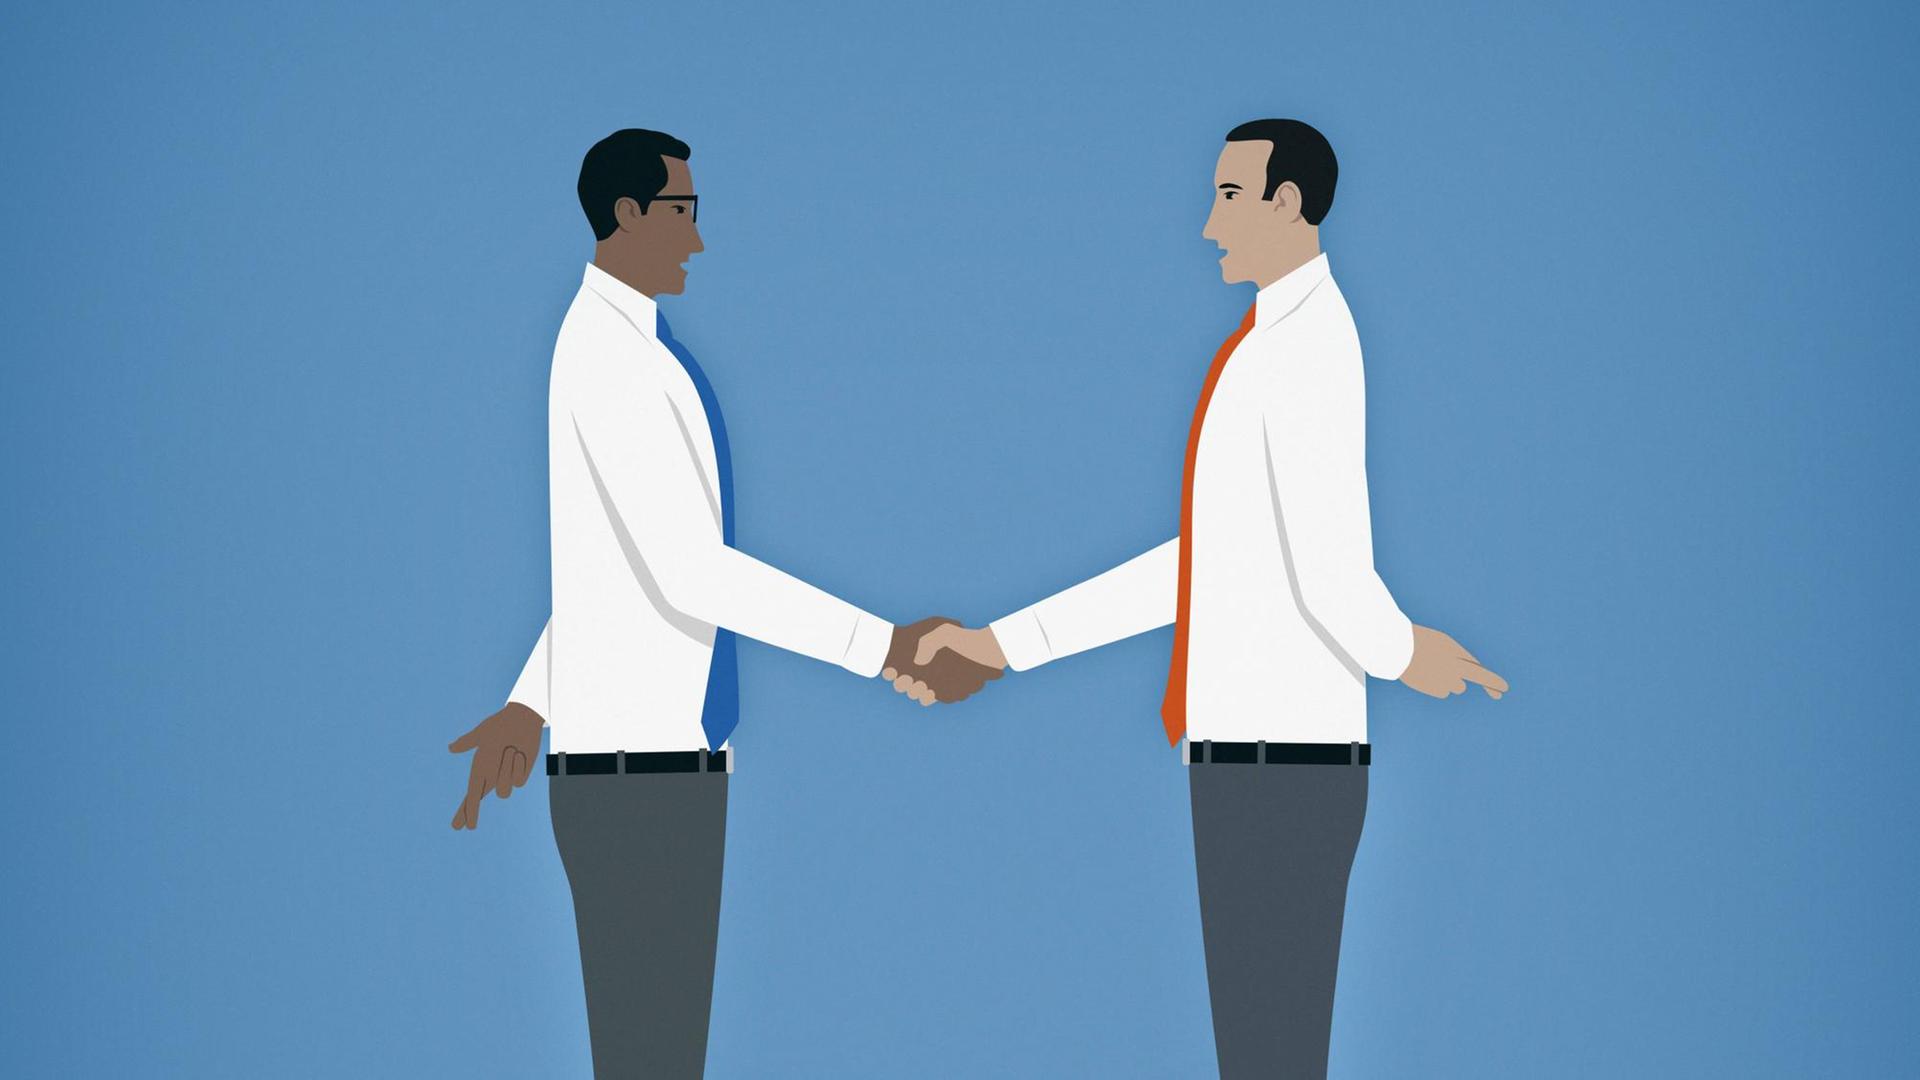 Eine Illustration von zwei Geschäftsmännern. Sie kreuzen die Finger hinter ihrem Rücken beim Handschlag. Der Hintergrund ist blau.